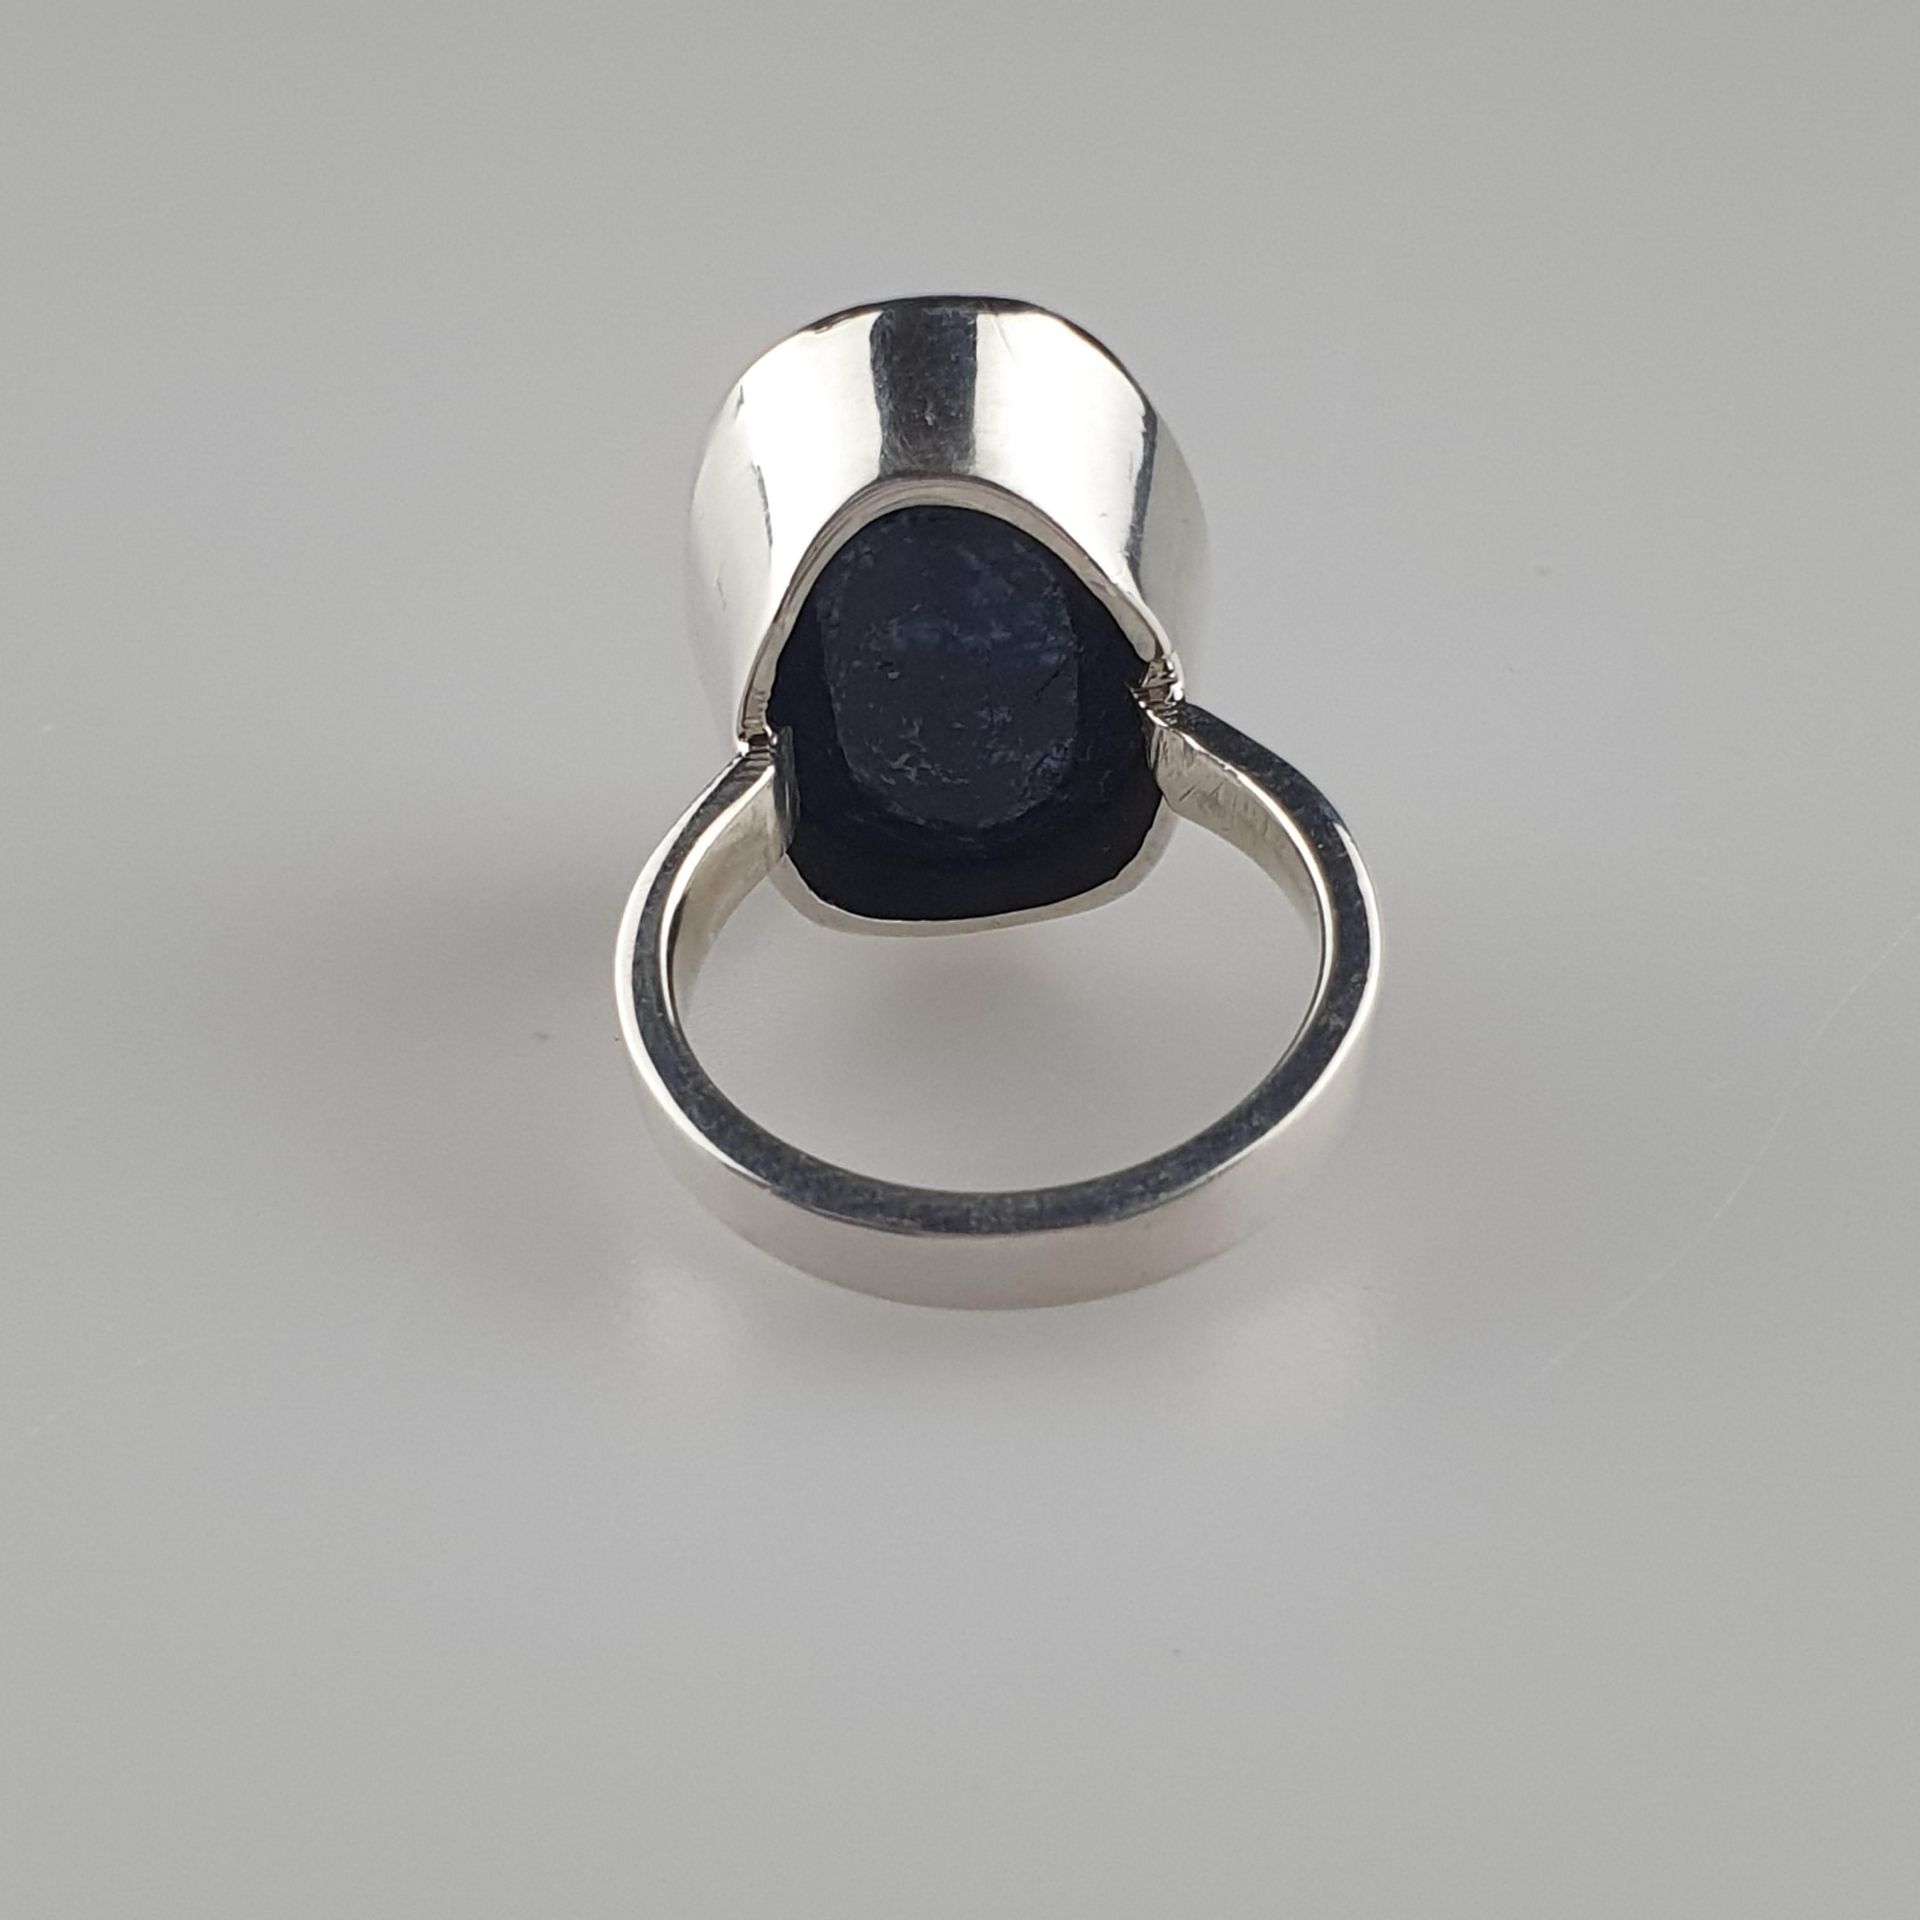 Saphirring - 925er Silber, Ringkopf besetzt mit blauem Saphir 37ct, Gewicht ca. - Bild 4 aus 5